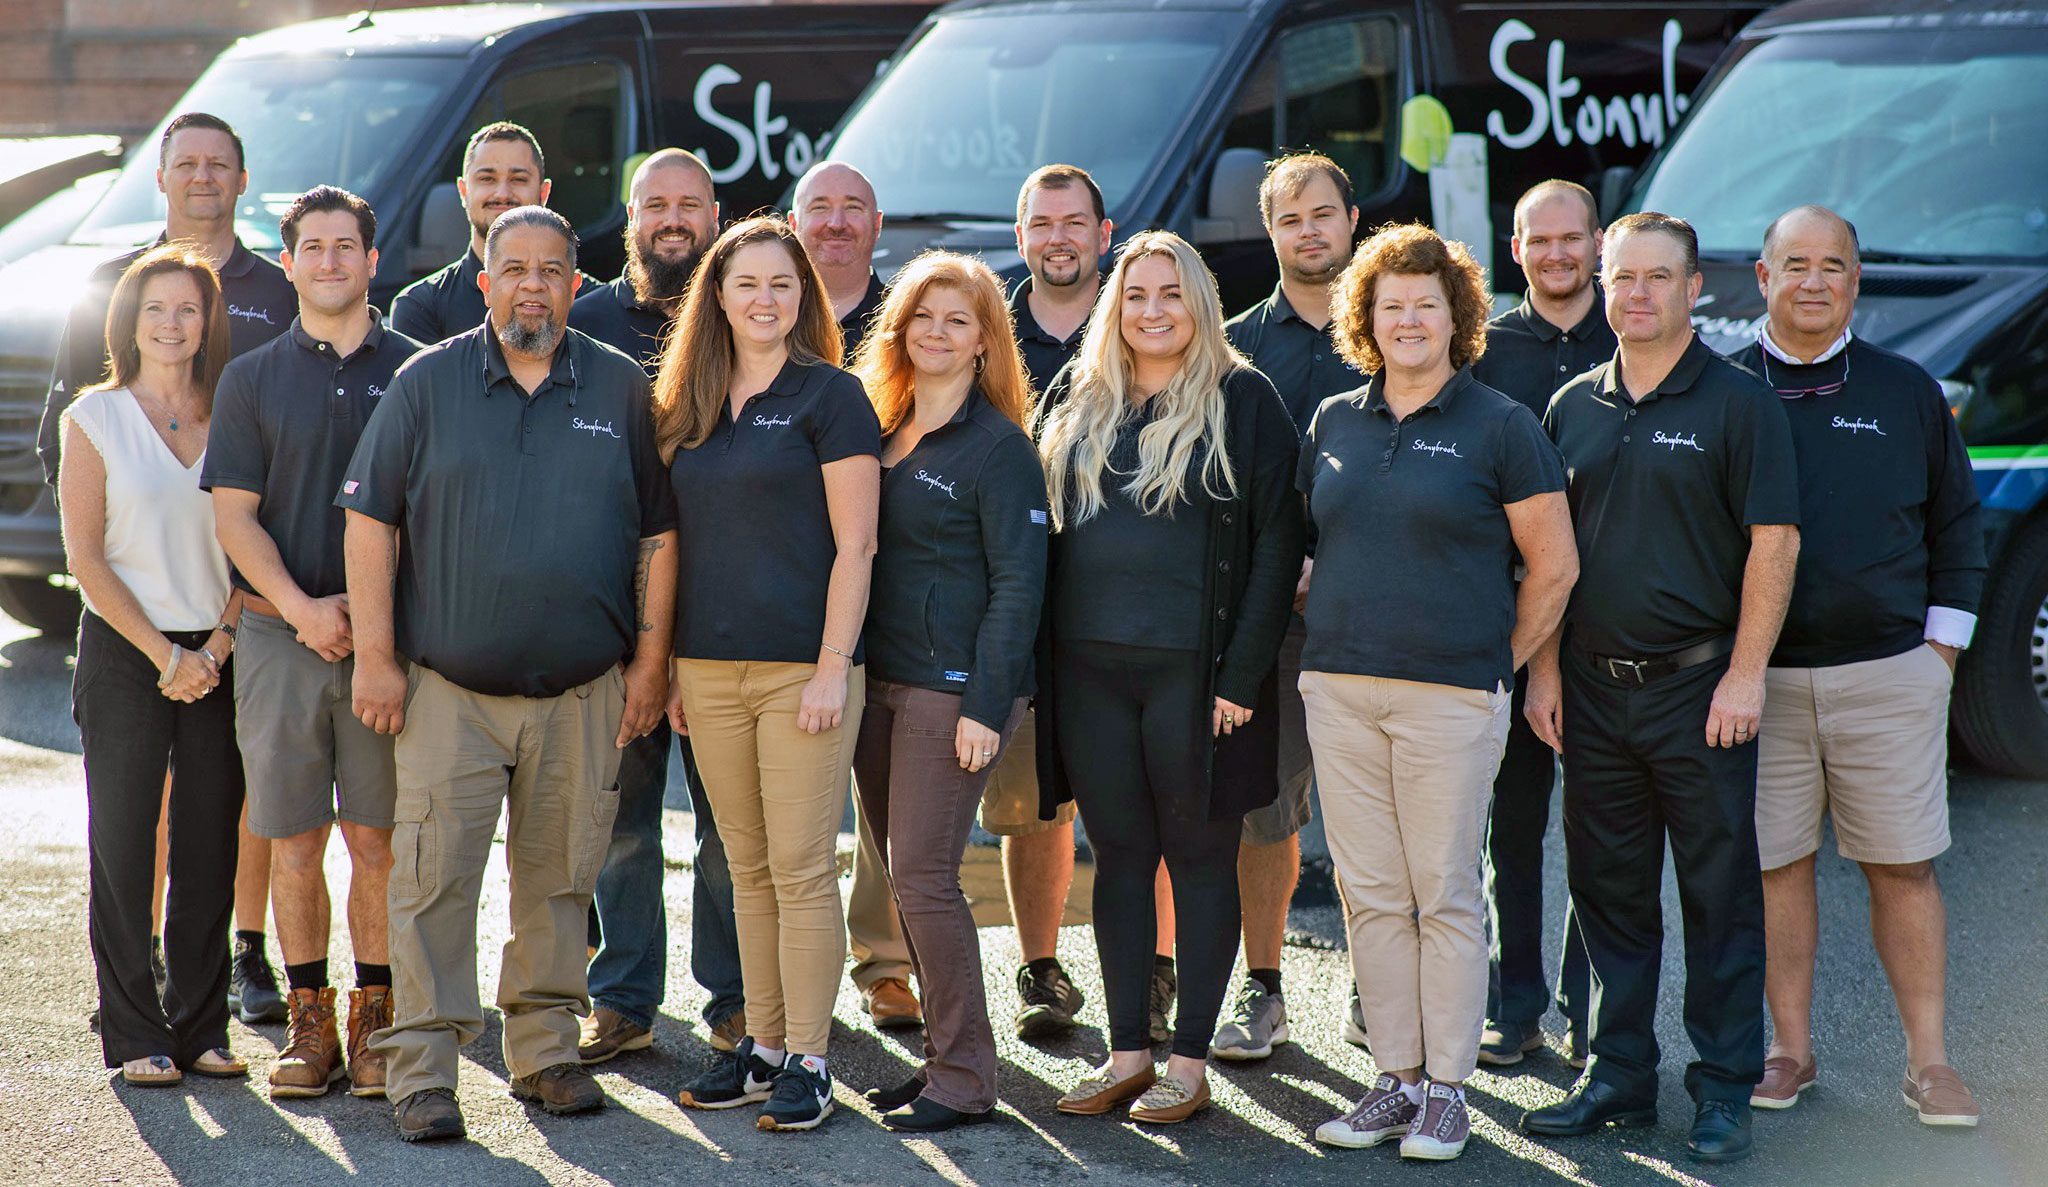 Group photo of Stonybrook Staff